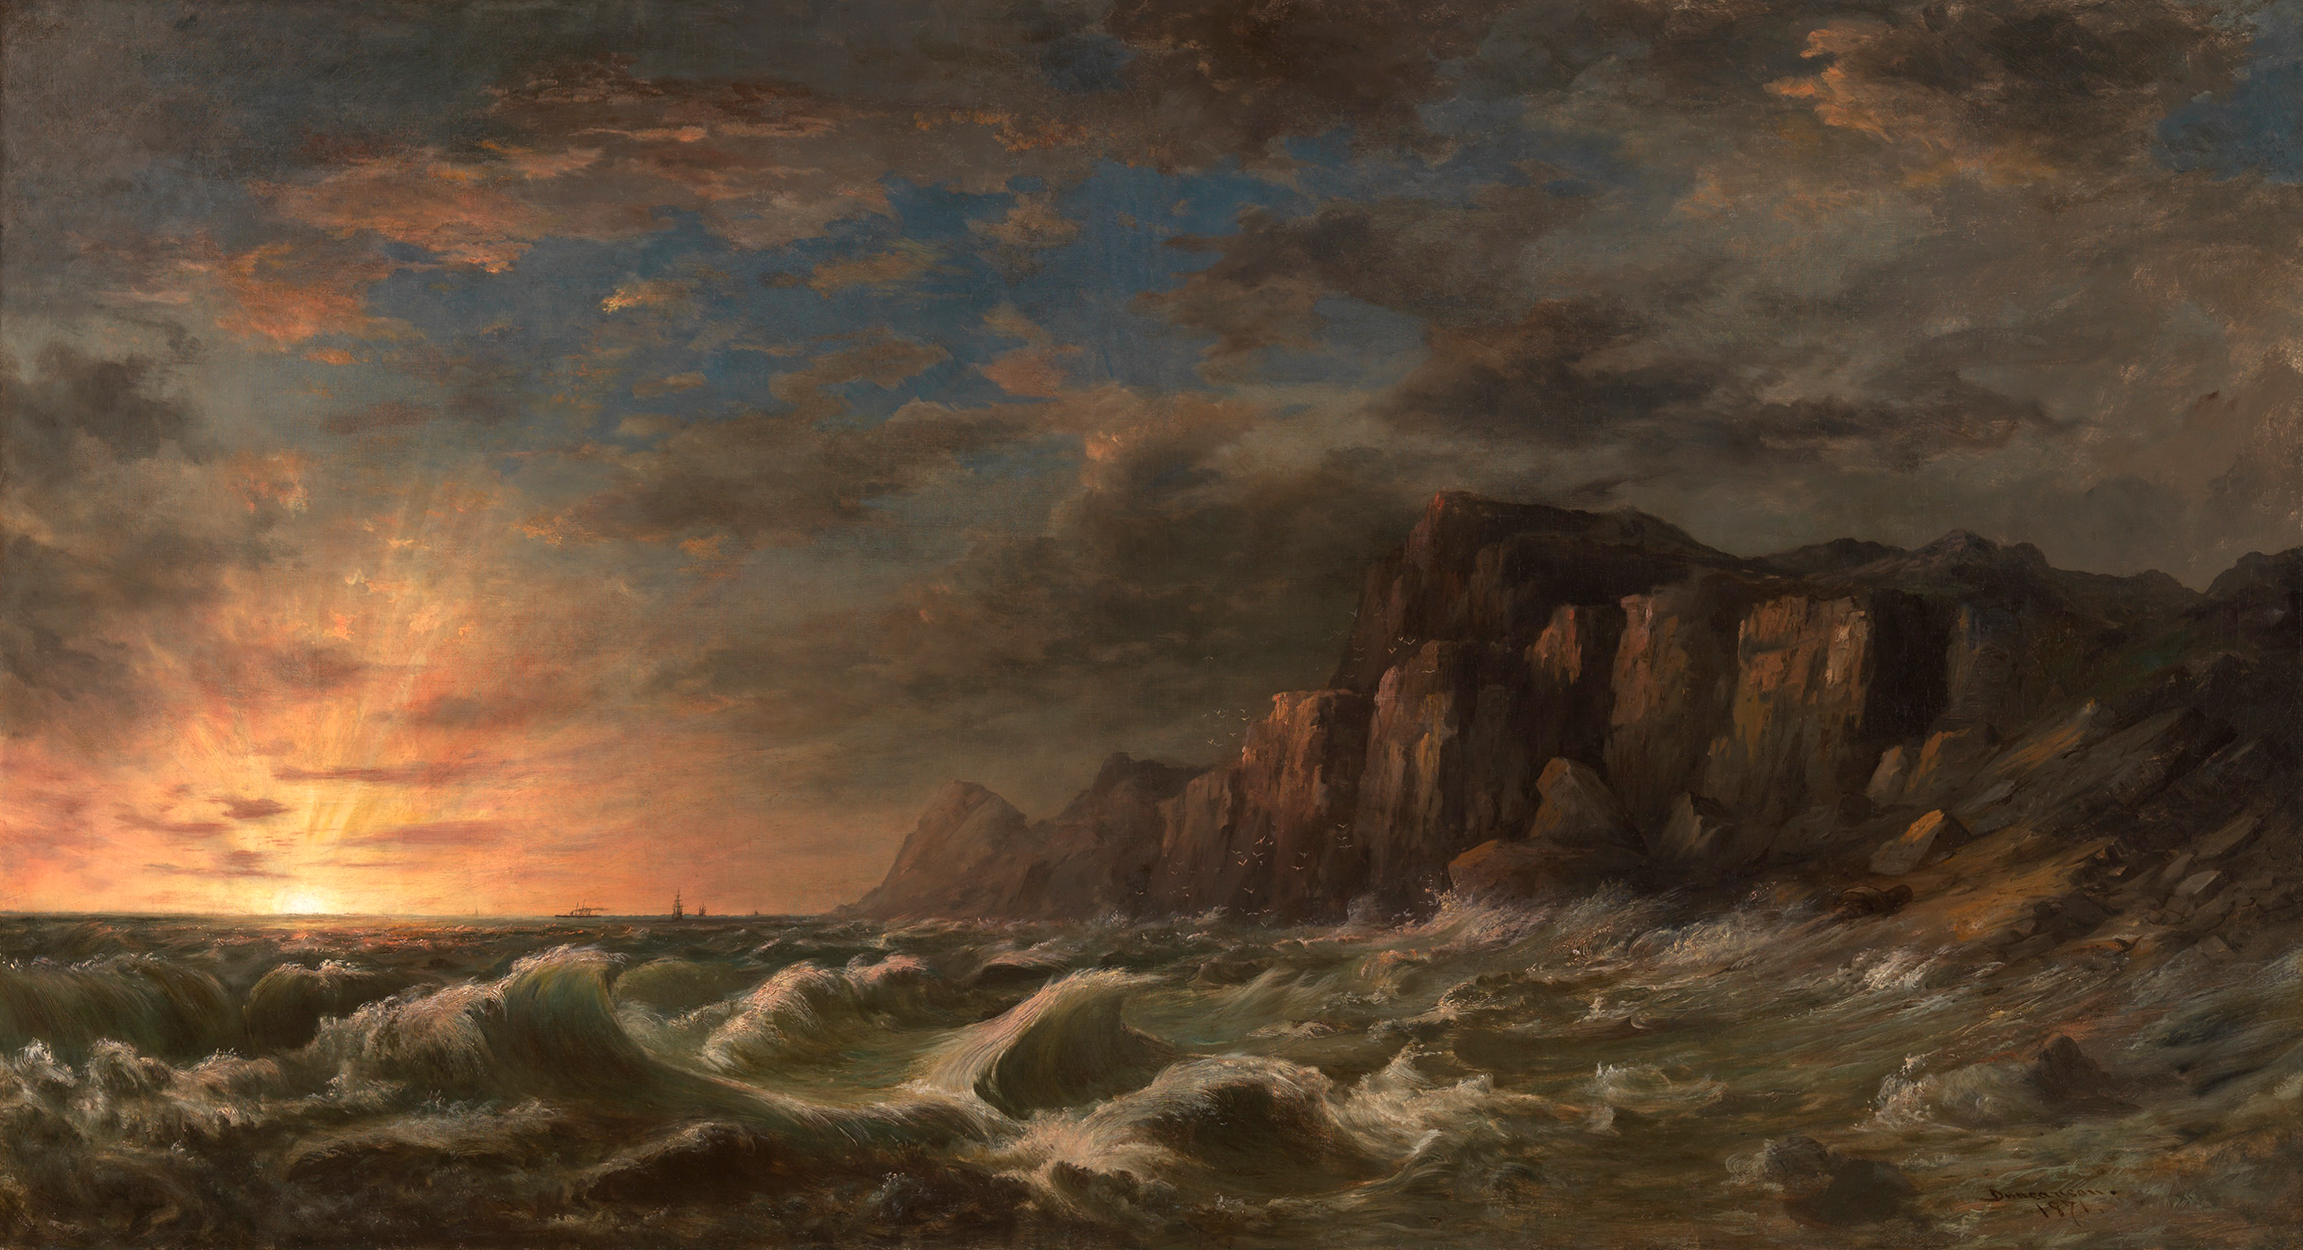 新英格蘭海岸的日落 by Robert Duncanson - 1871 - 92 x 169.5 cm 